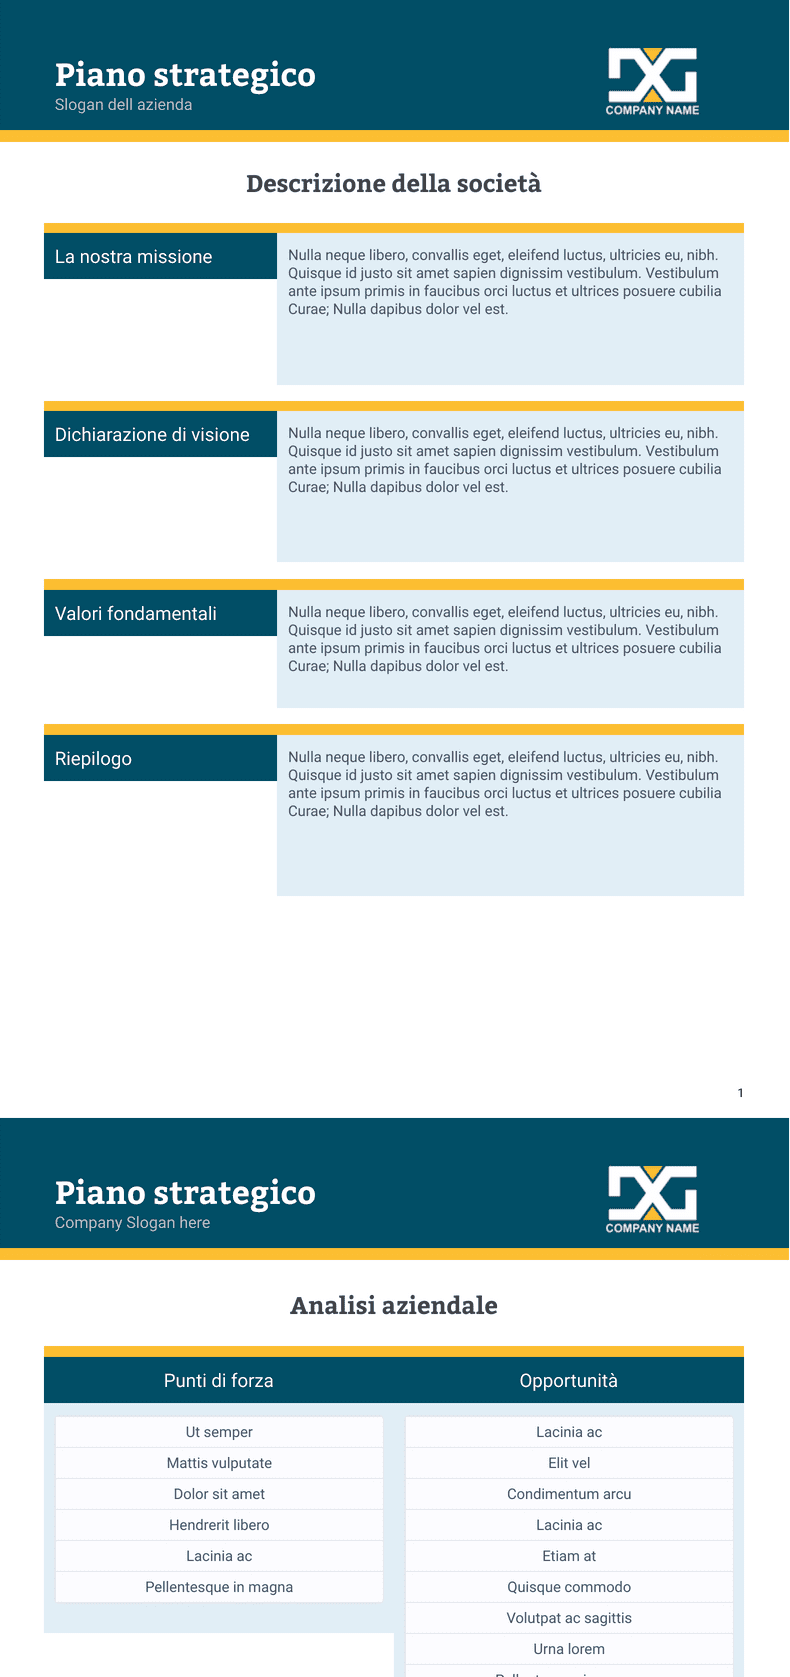 PDF Templates: Modulo piano strategico